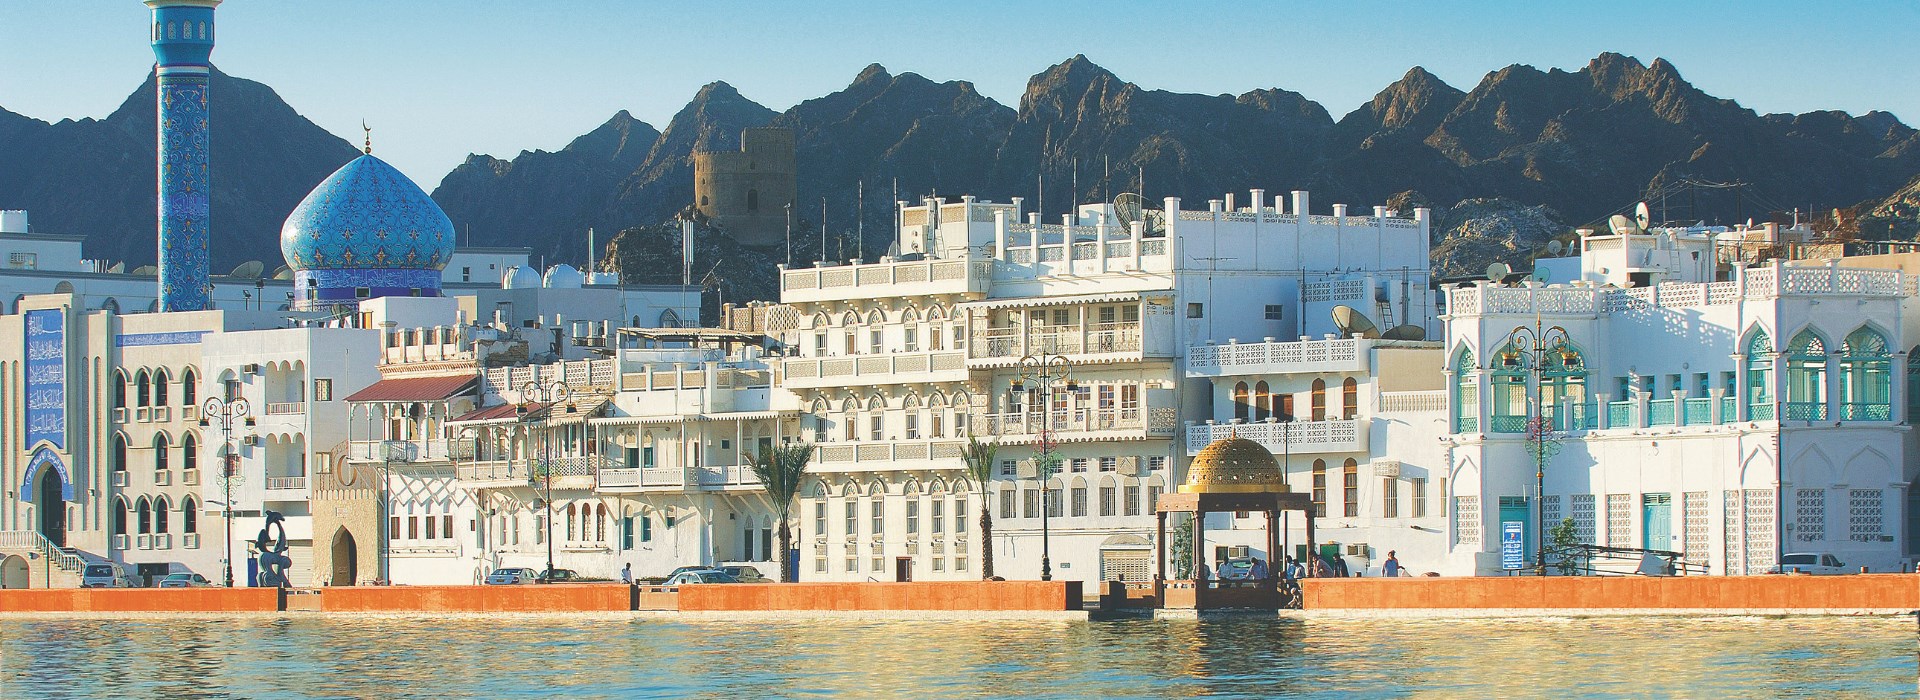 Visiter Mascate - Oman